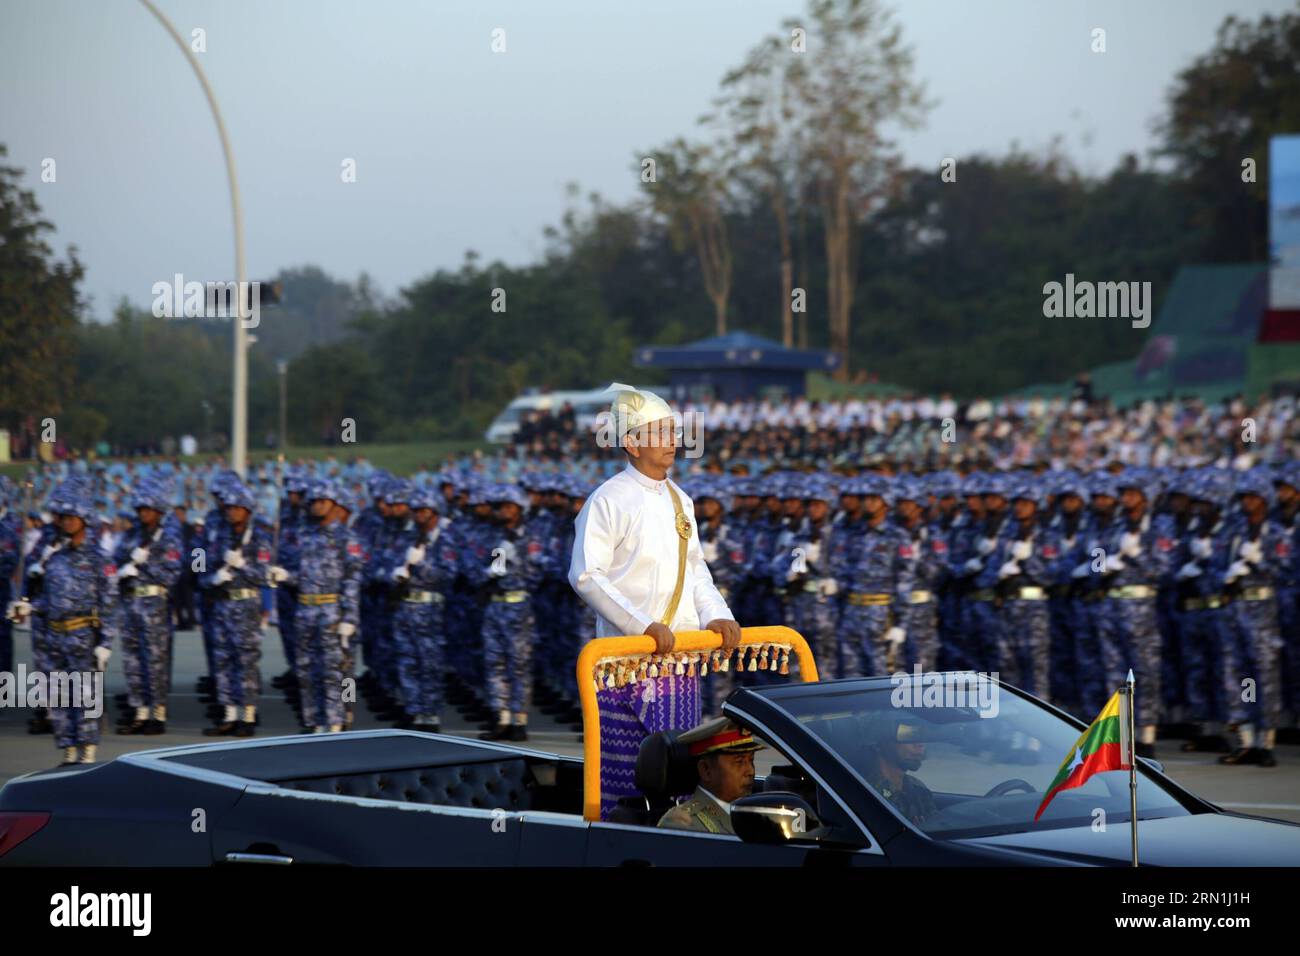 AKTUELLES ZEITGESCHEHEN Myanmar feiert Unabhängigkeitstag (150104) -- NAY PYI TAW, 4 gennaio 2015 -- il presidente del Myanmar U Thein Sein (C) si trova sul veicolo mentre ispeziona i soldati durante una cerimonia per celebrare il 67° anniversario del giorno dell'indipendenza del Myanmar a Nay Pyi Taw, Myanmar, 4 gennaio 2015. Il Myanmar ha ripreso la parata militare e la processione di massa domenica per celebrare il giorno dell'indipendenza del paese per la prima volta in oltre cinquant'anni dalla fine degli anni '1950). MYANMAR-NAY PYI TAW-INDEPENDENCE DAY UxAung PUBLICATIONxNOTxINxCHN News eventi attuali Myanmar celebra il giorno dell'indipendenza Nay Pyi Taw Ja Foto Stock